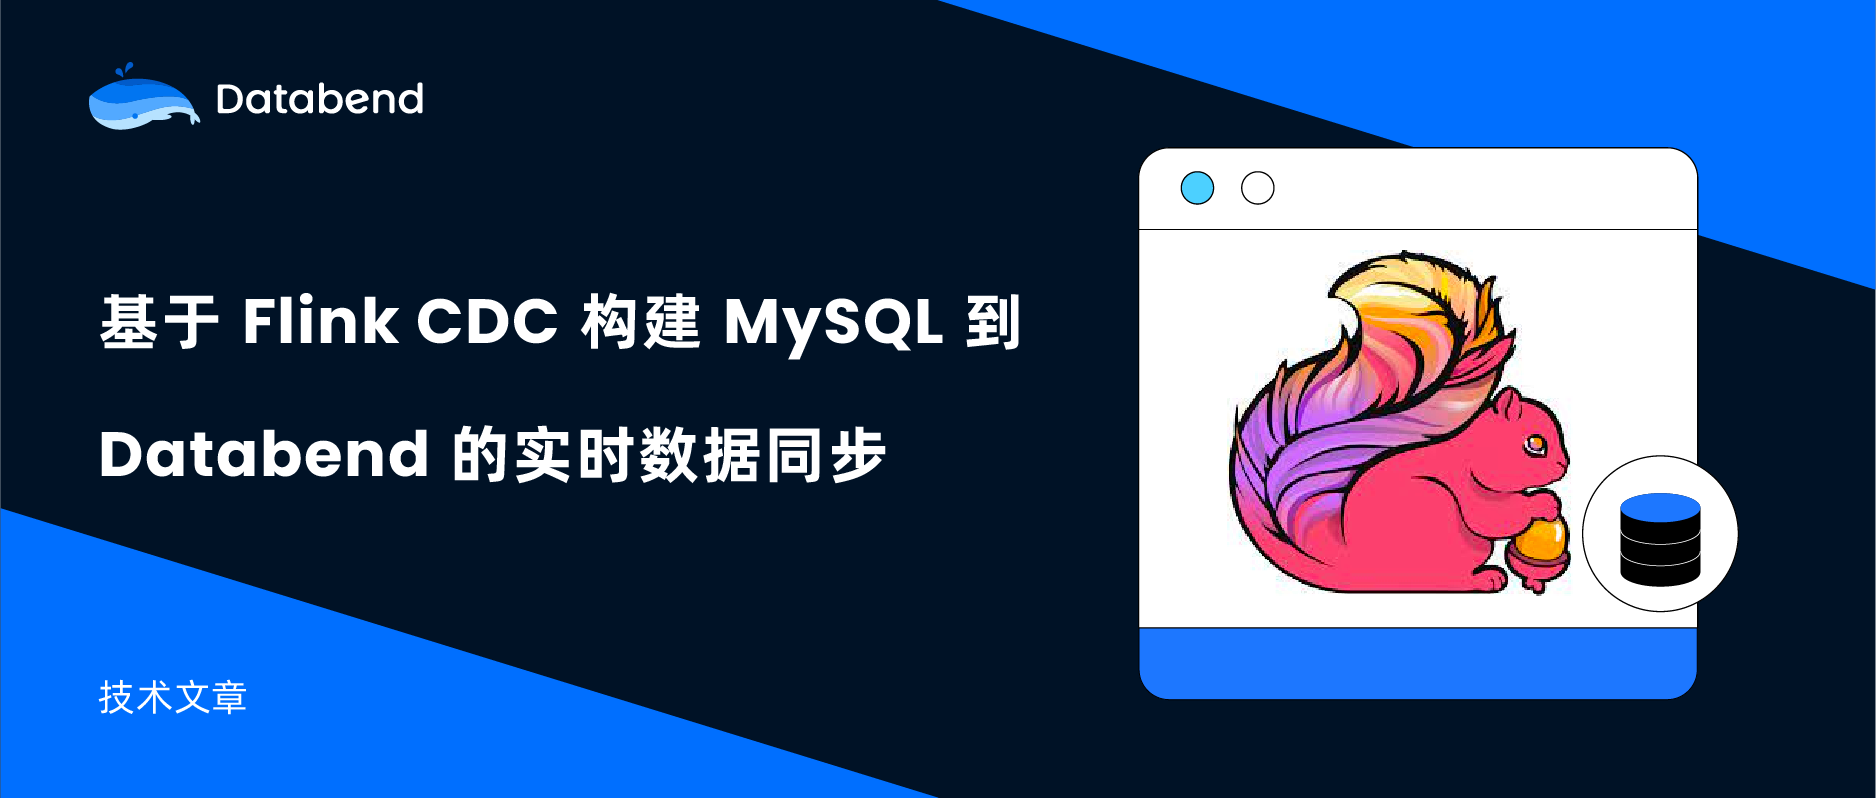 基于 Flink CDC 构建 MySQL 到 Databend 的 实时数据同步